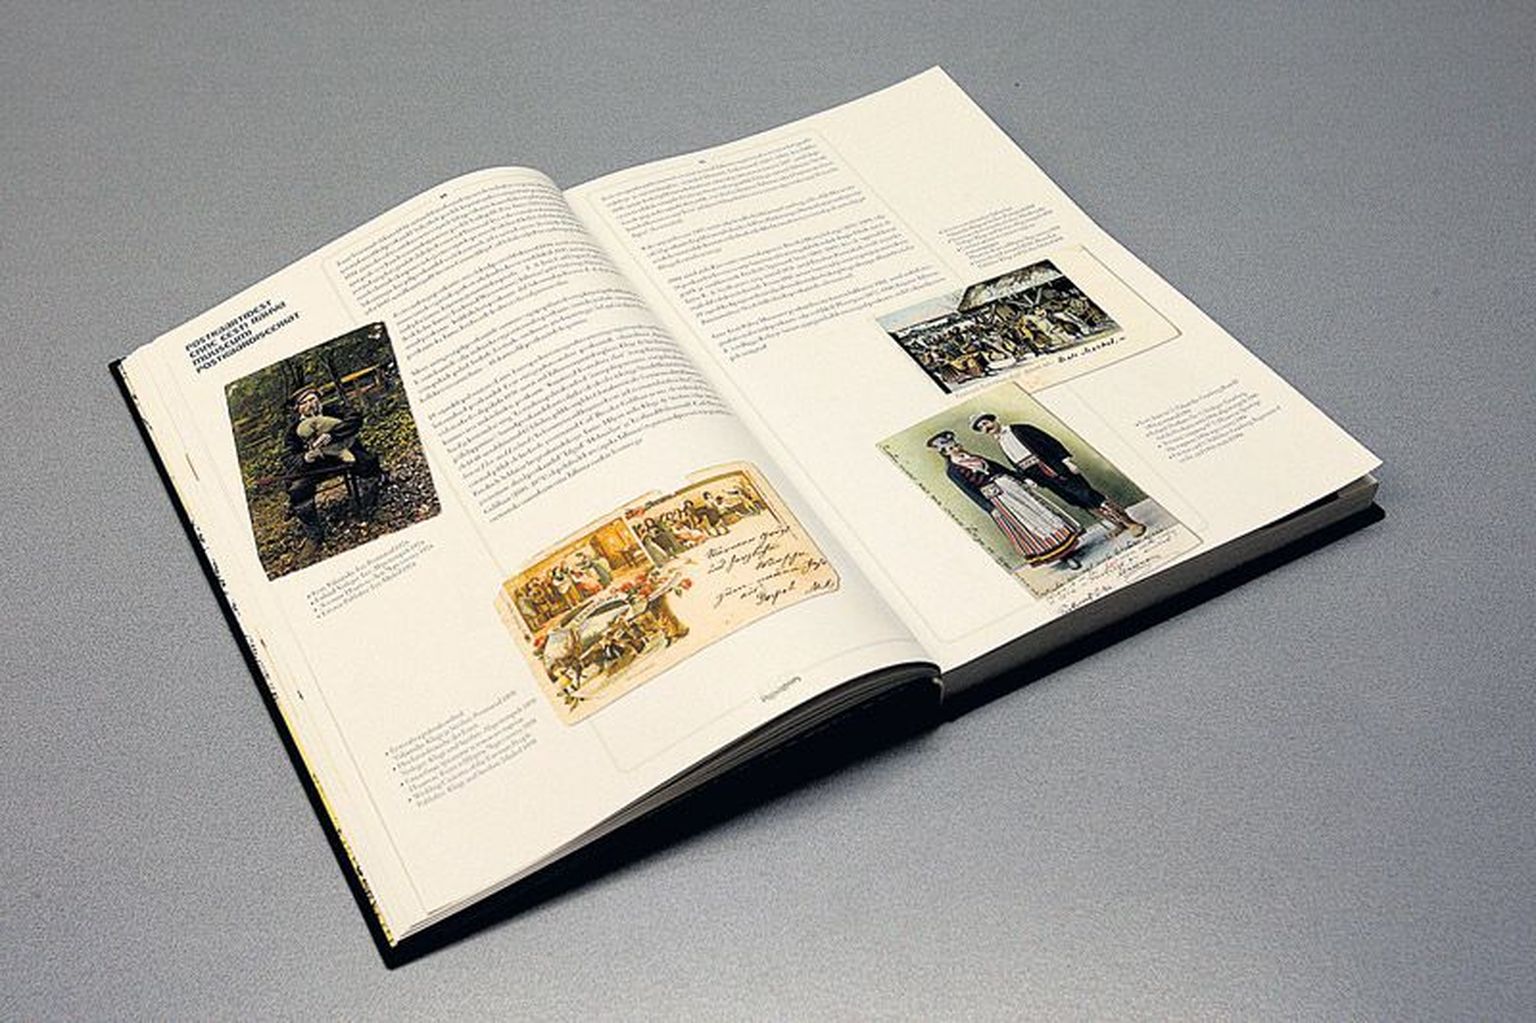 Pildialbumi lehekülgedel 34 ja 35 annab Indrek Ilomets ülevaate postkaartidest enne Eesti Rahva Muuseumi postkaardiseeria kirjastamist.